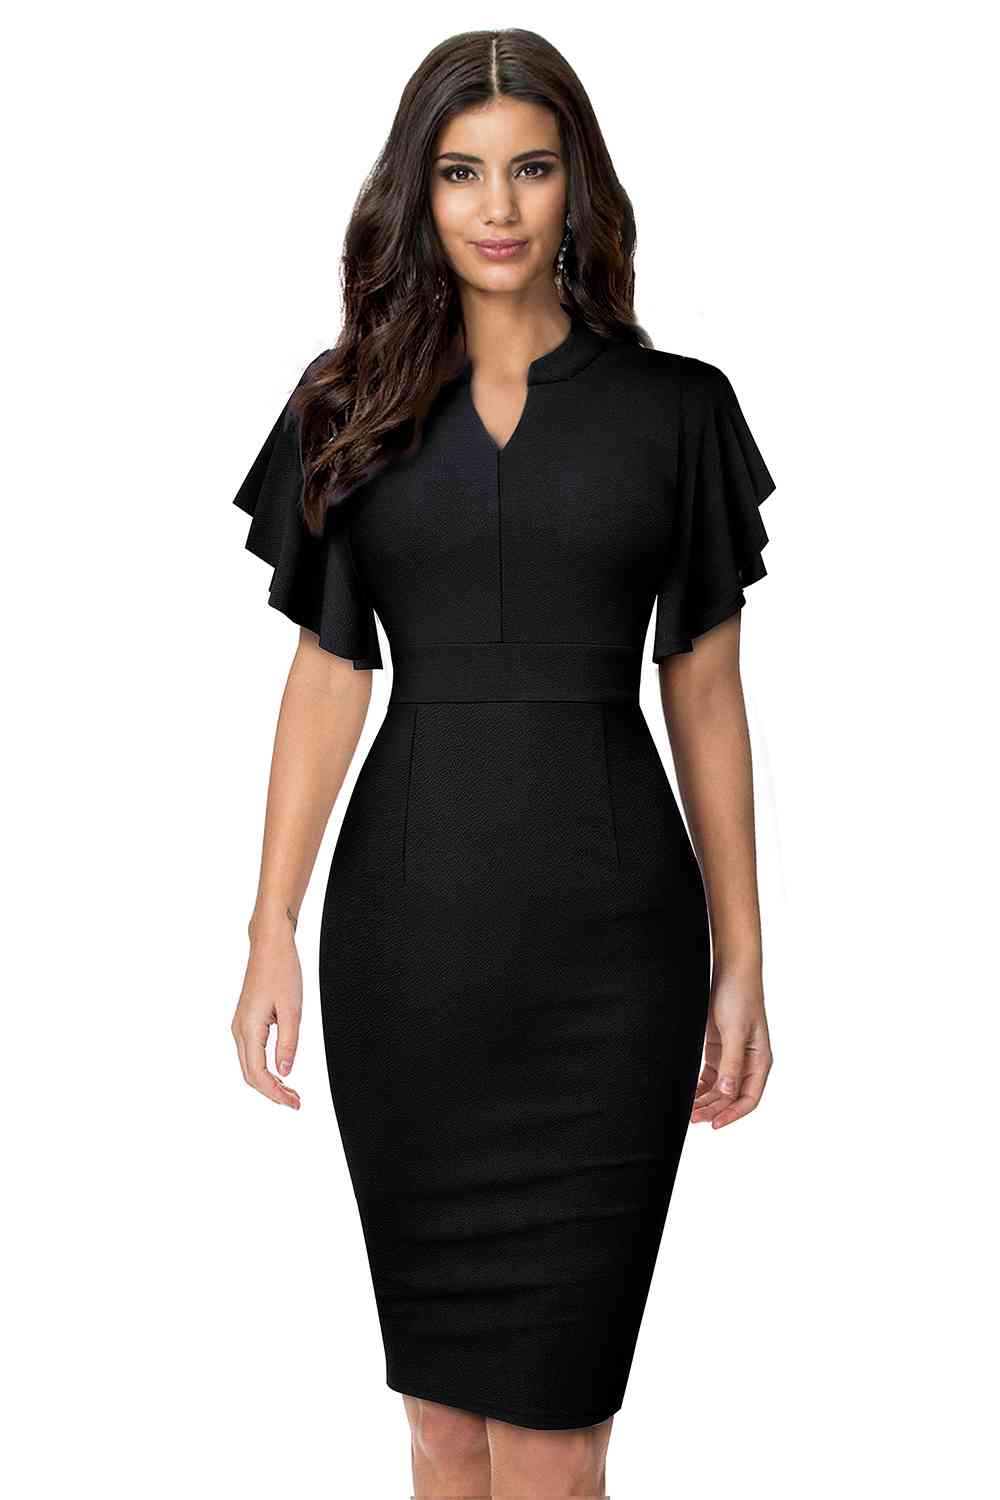 Notched Neck Flutter Sleeve Pencil Dress - Black / S - All Dresses - Dresses - 4 - 2024